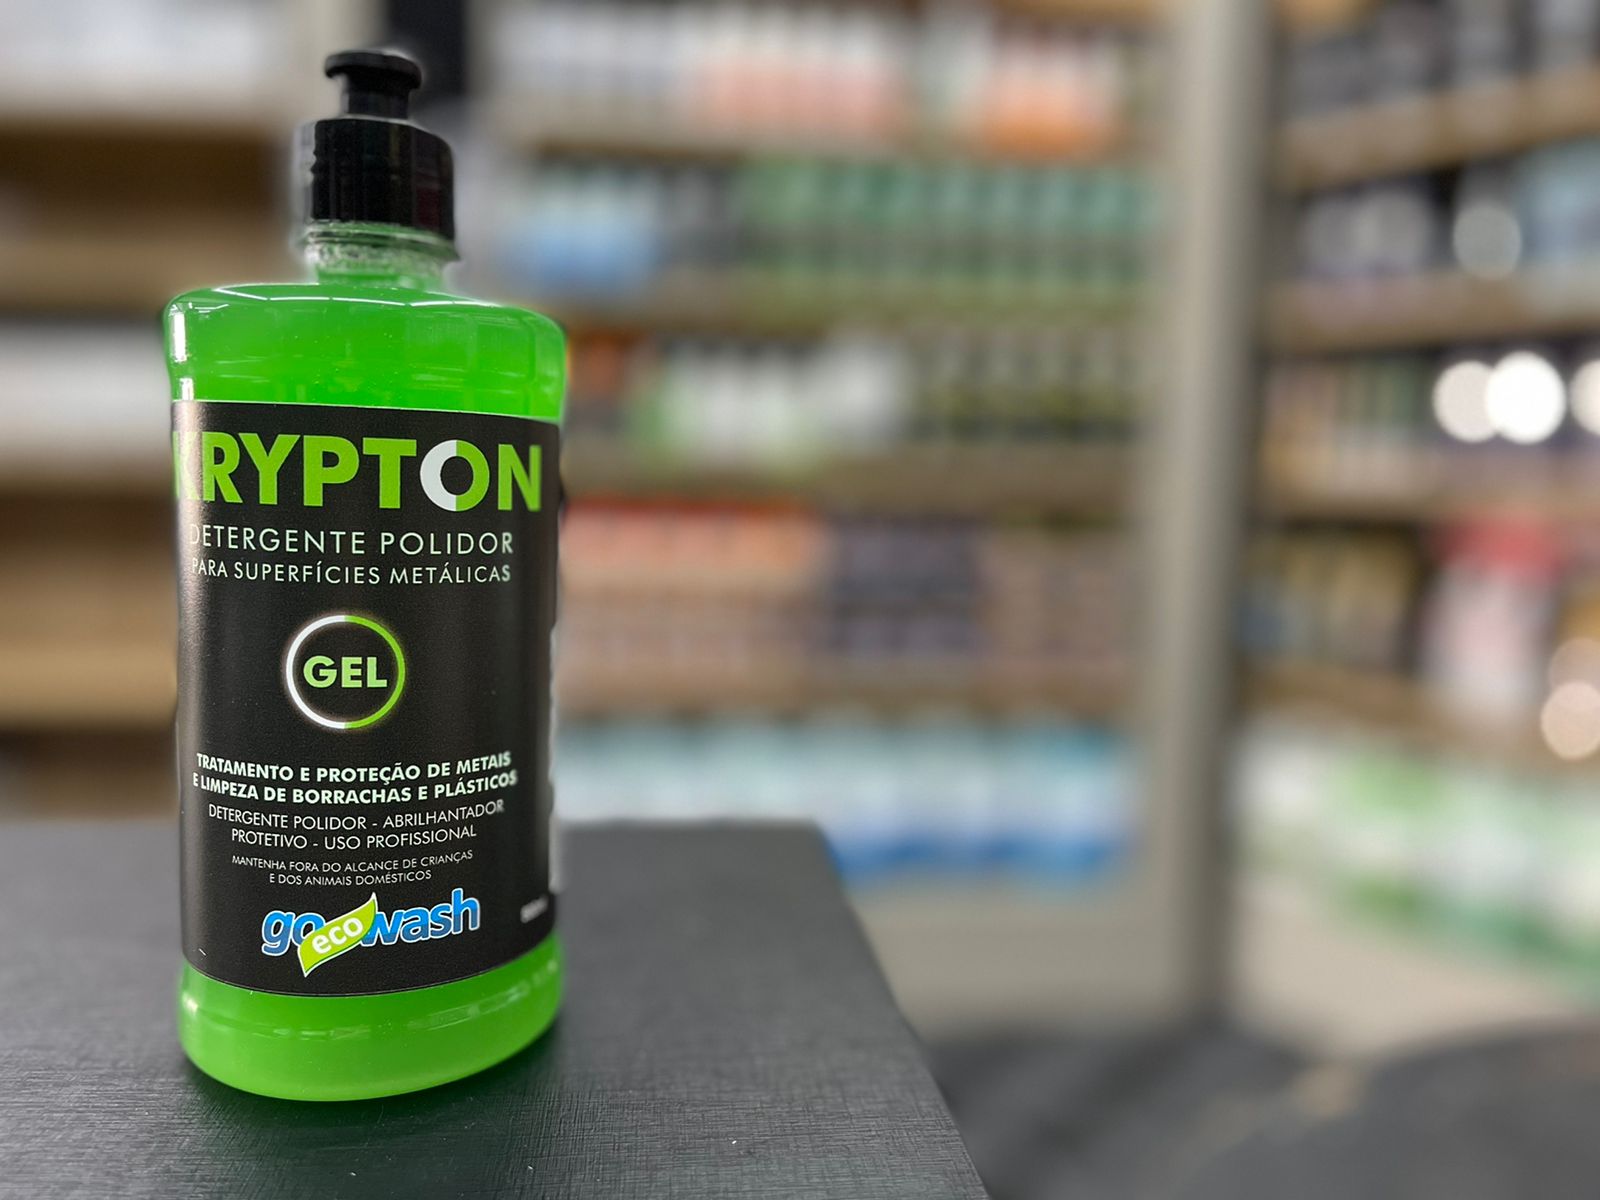 Krypton gel detergente polidor para metais, borrachas e plásticos 500ml